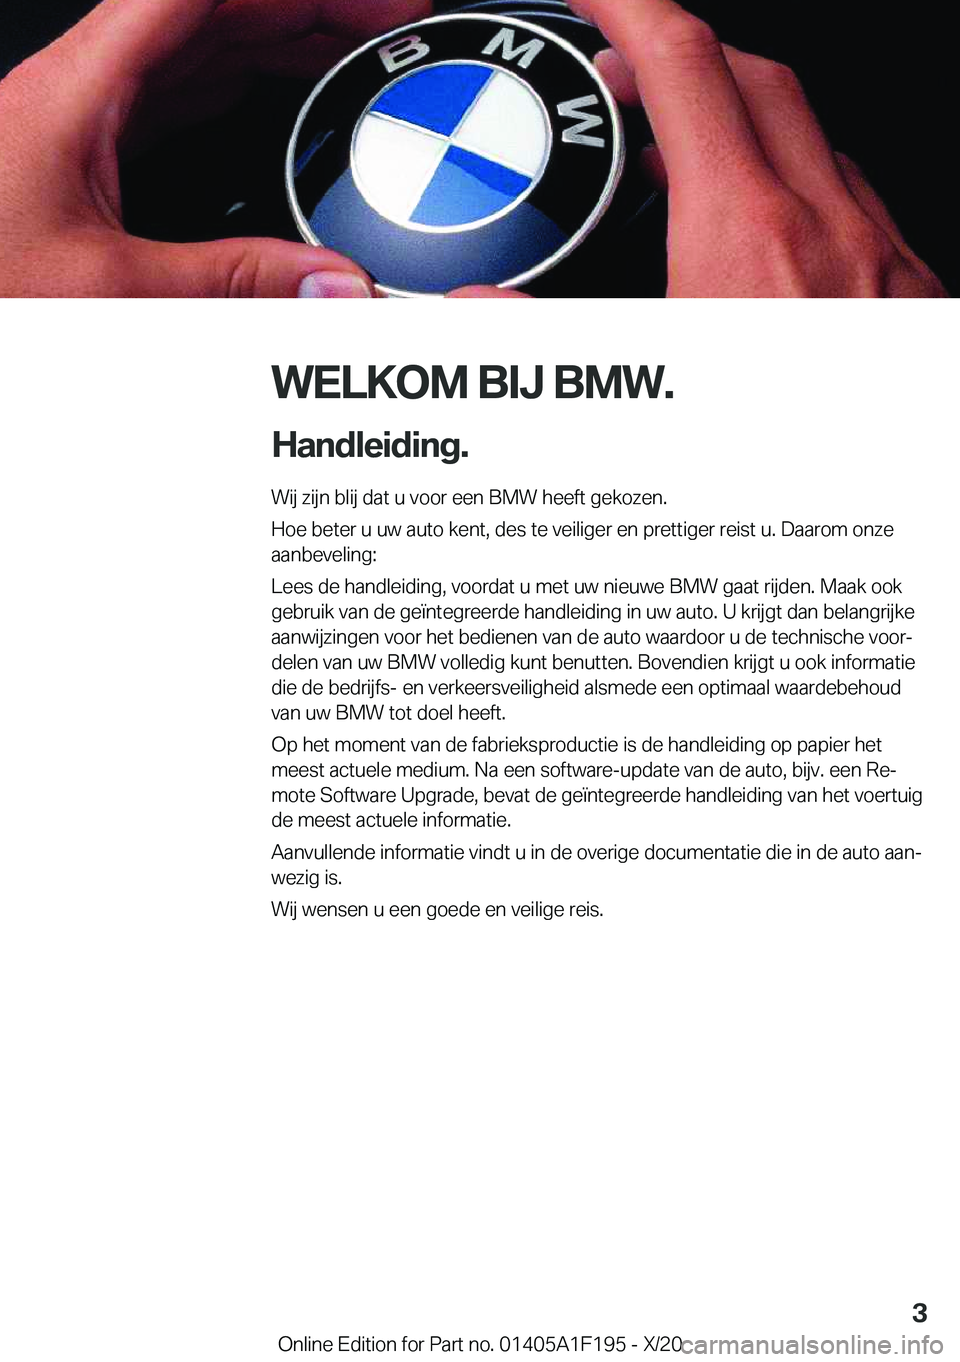 BMW M5 2021  Instructieboekjes (in Dutch) �W�E�L�K�O�M��B�I�J��B�M�W�.
�H�a�n�d�l�e�i�d�i�n�g�. �W�i�j��z�i�j�n��b�l�i�j��d�a�t��u��v�o�o�r��e�e�n��B�M�W��h�e�e�f�t��g�e�k�o�z�e�n�.
�H�o�e��b�e�t�e�r��u��u�w��a�u�t�o��k�e�n�t�